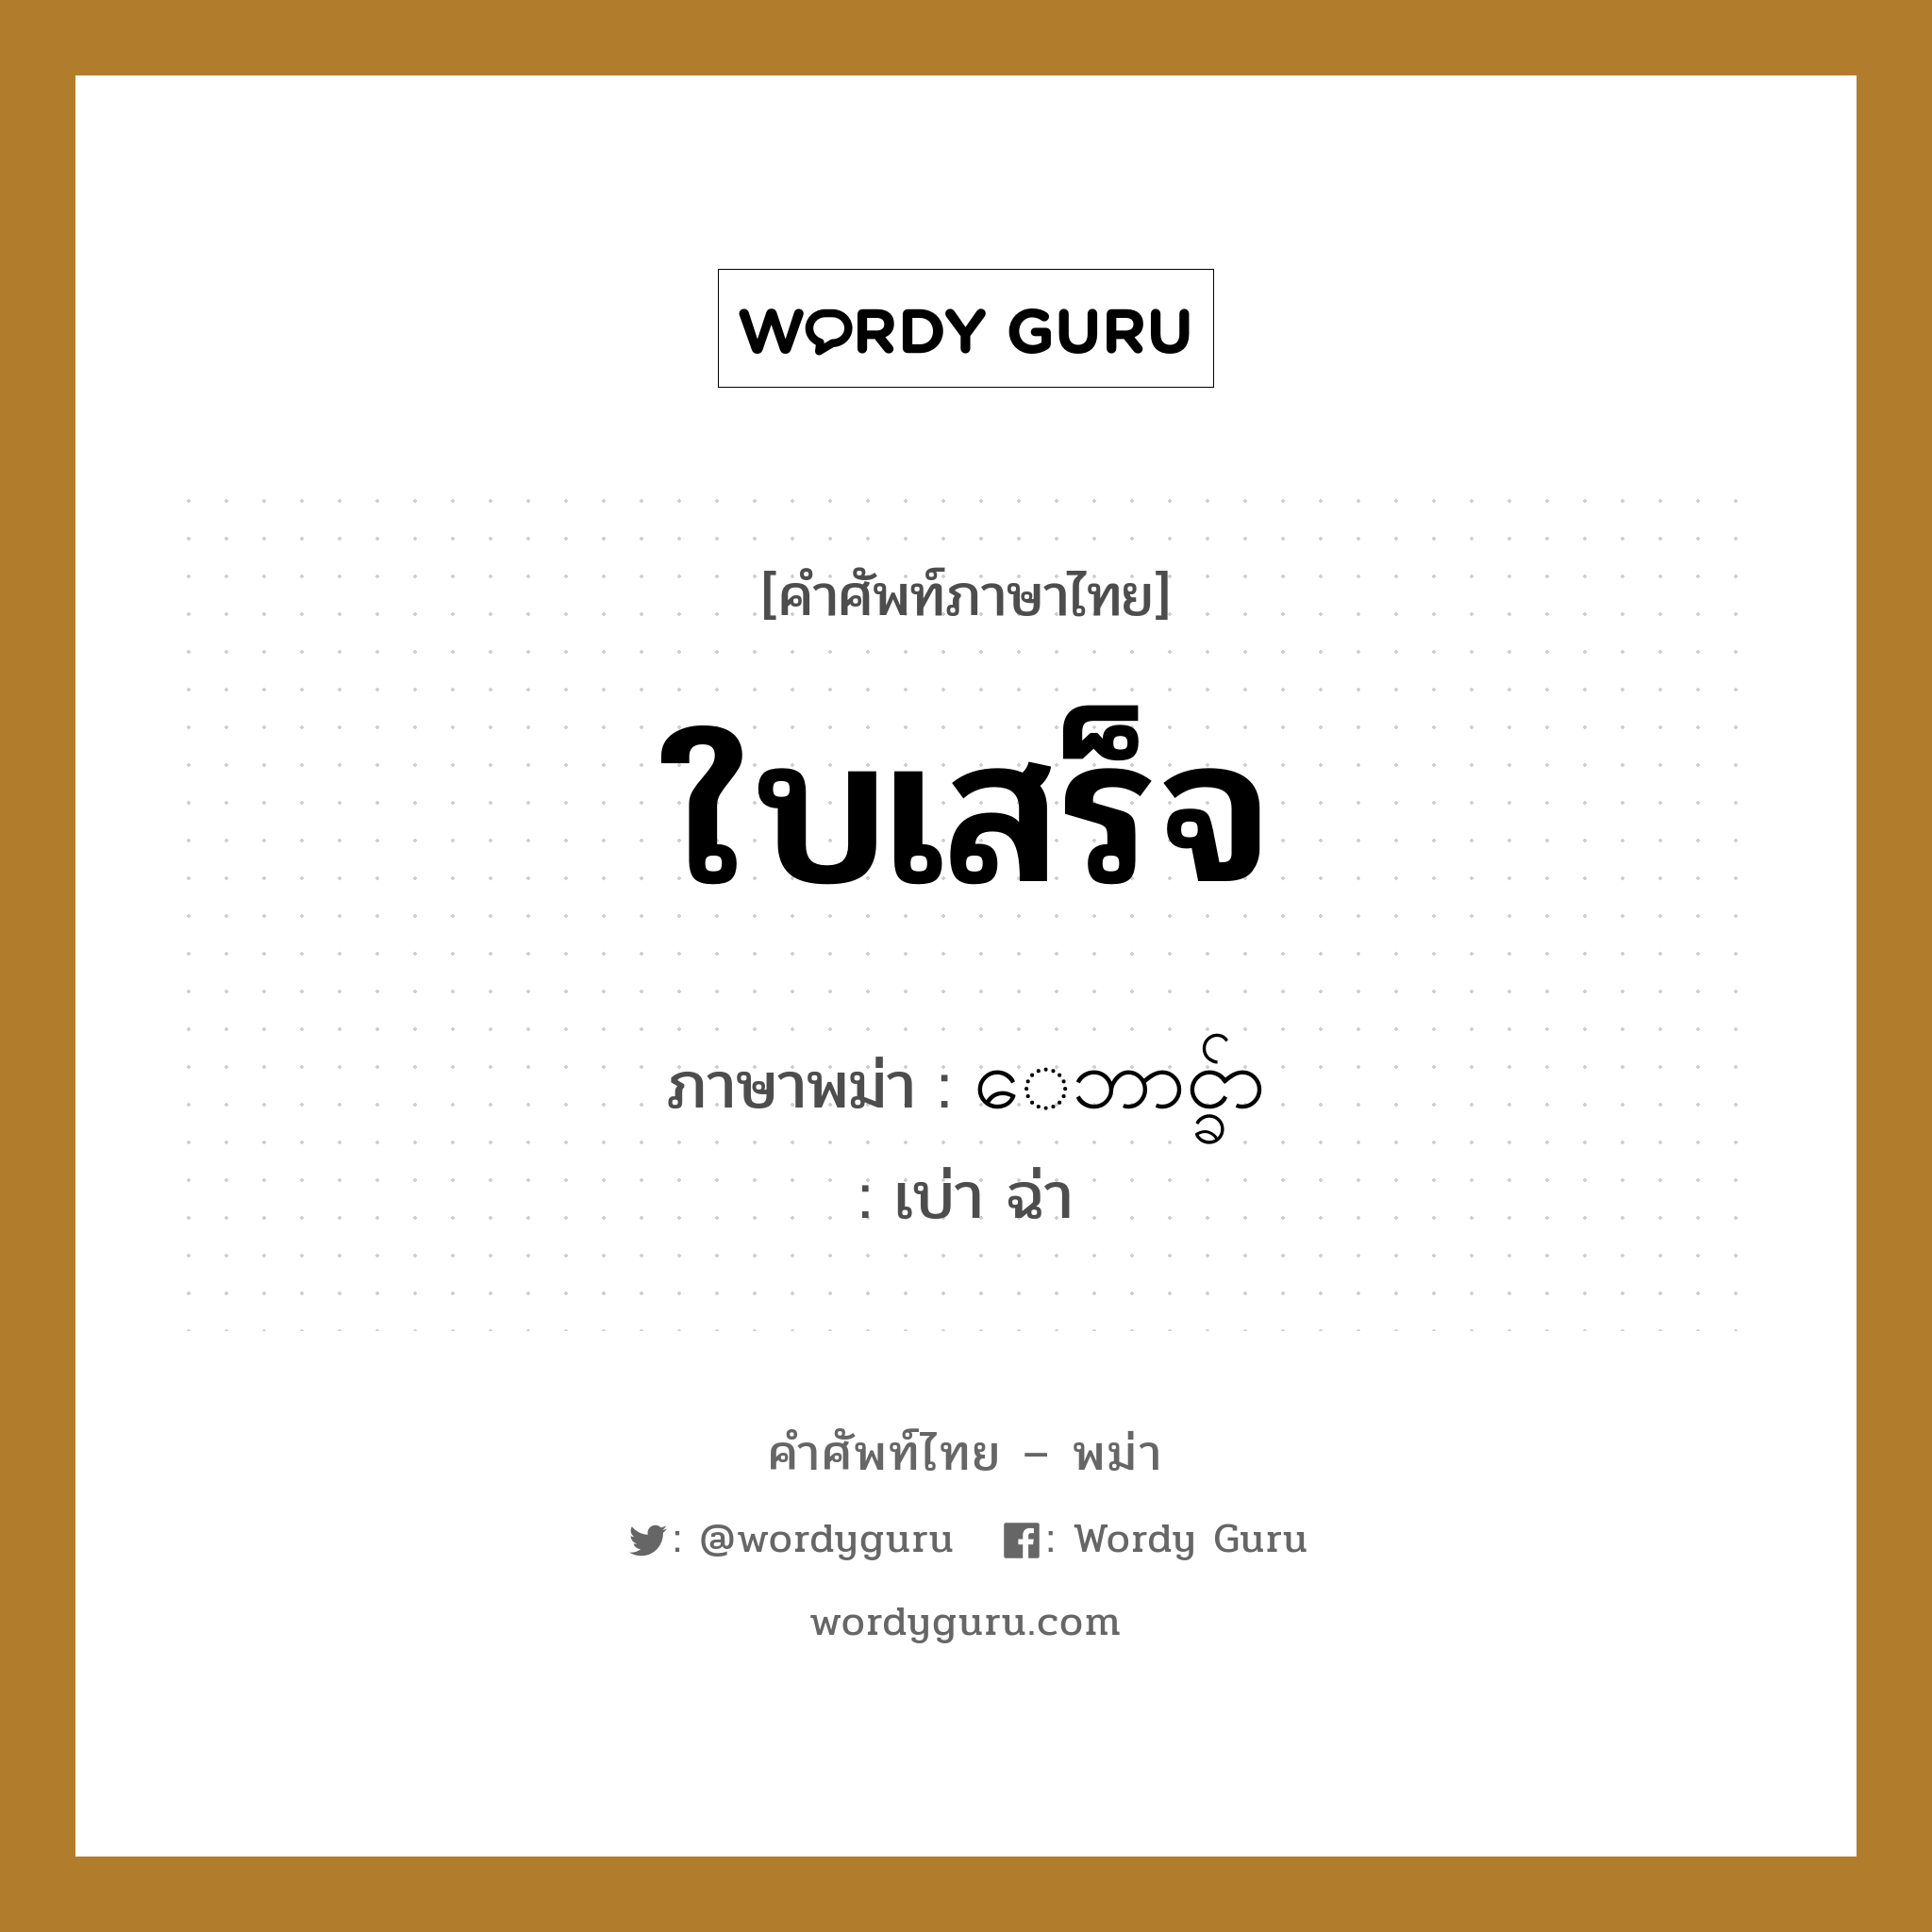 ใบเสร็จ ภาษาพม่าคืออะไร, คำศัพท์ภาษาไทย - พม่า ใบเสร็จ ภาษาพม่า ေဘာင္ခ်ာ หมวด บทสนทนาการซื้อขาย เบ่า ฉ่า หมวด บทสนทนาการซื้อขาย